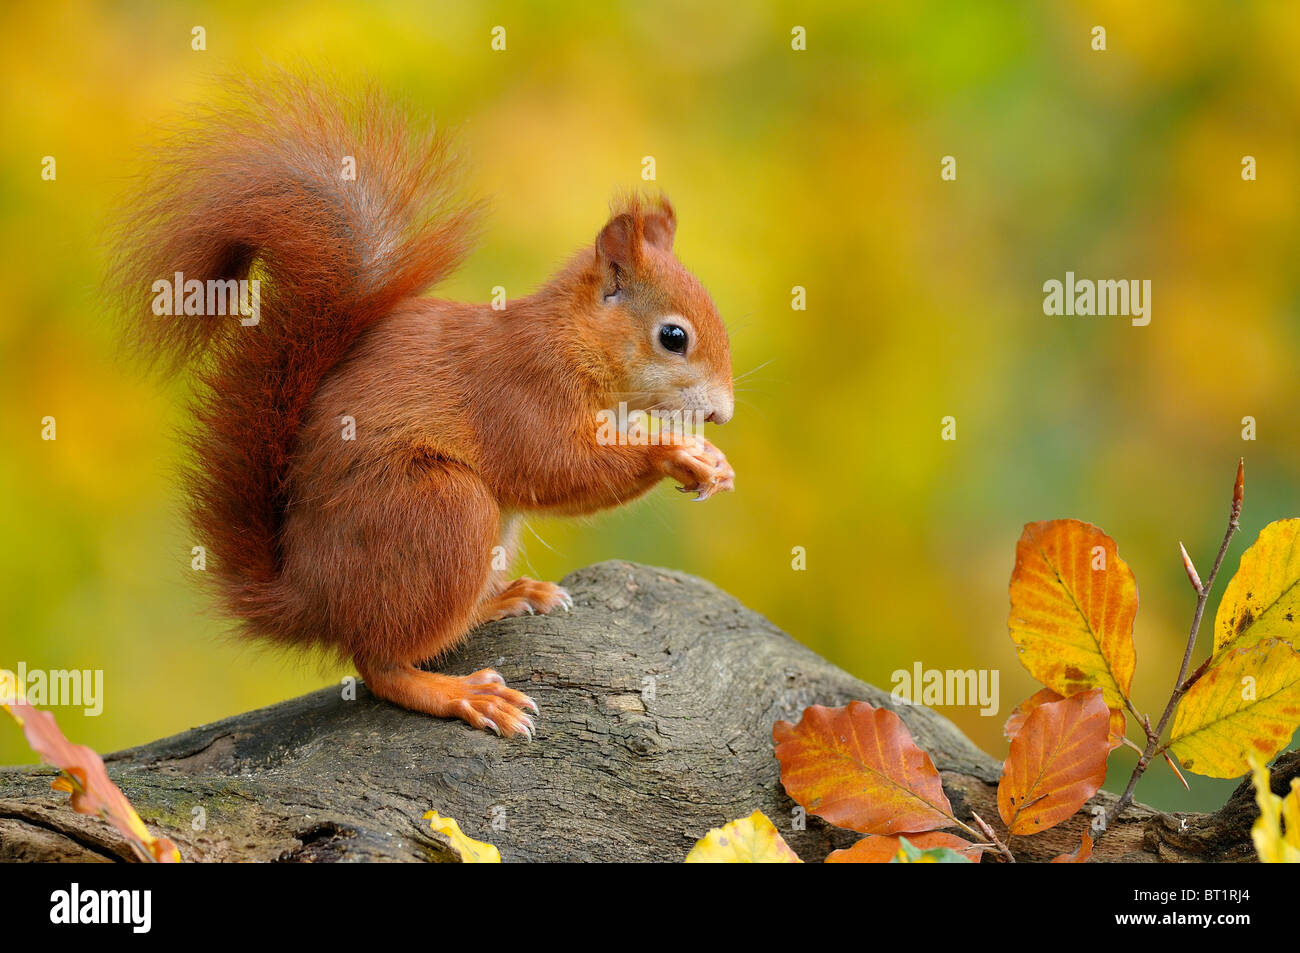 Eichhörnchen (Sciurus Vulgaris) Essen im stehen auf einem Baumstumpf, Niederlande. Stockfoto